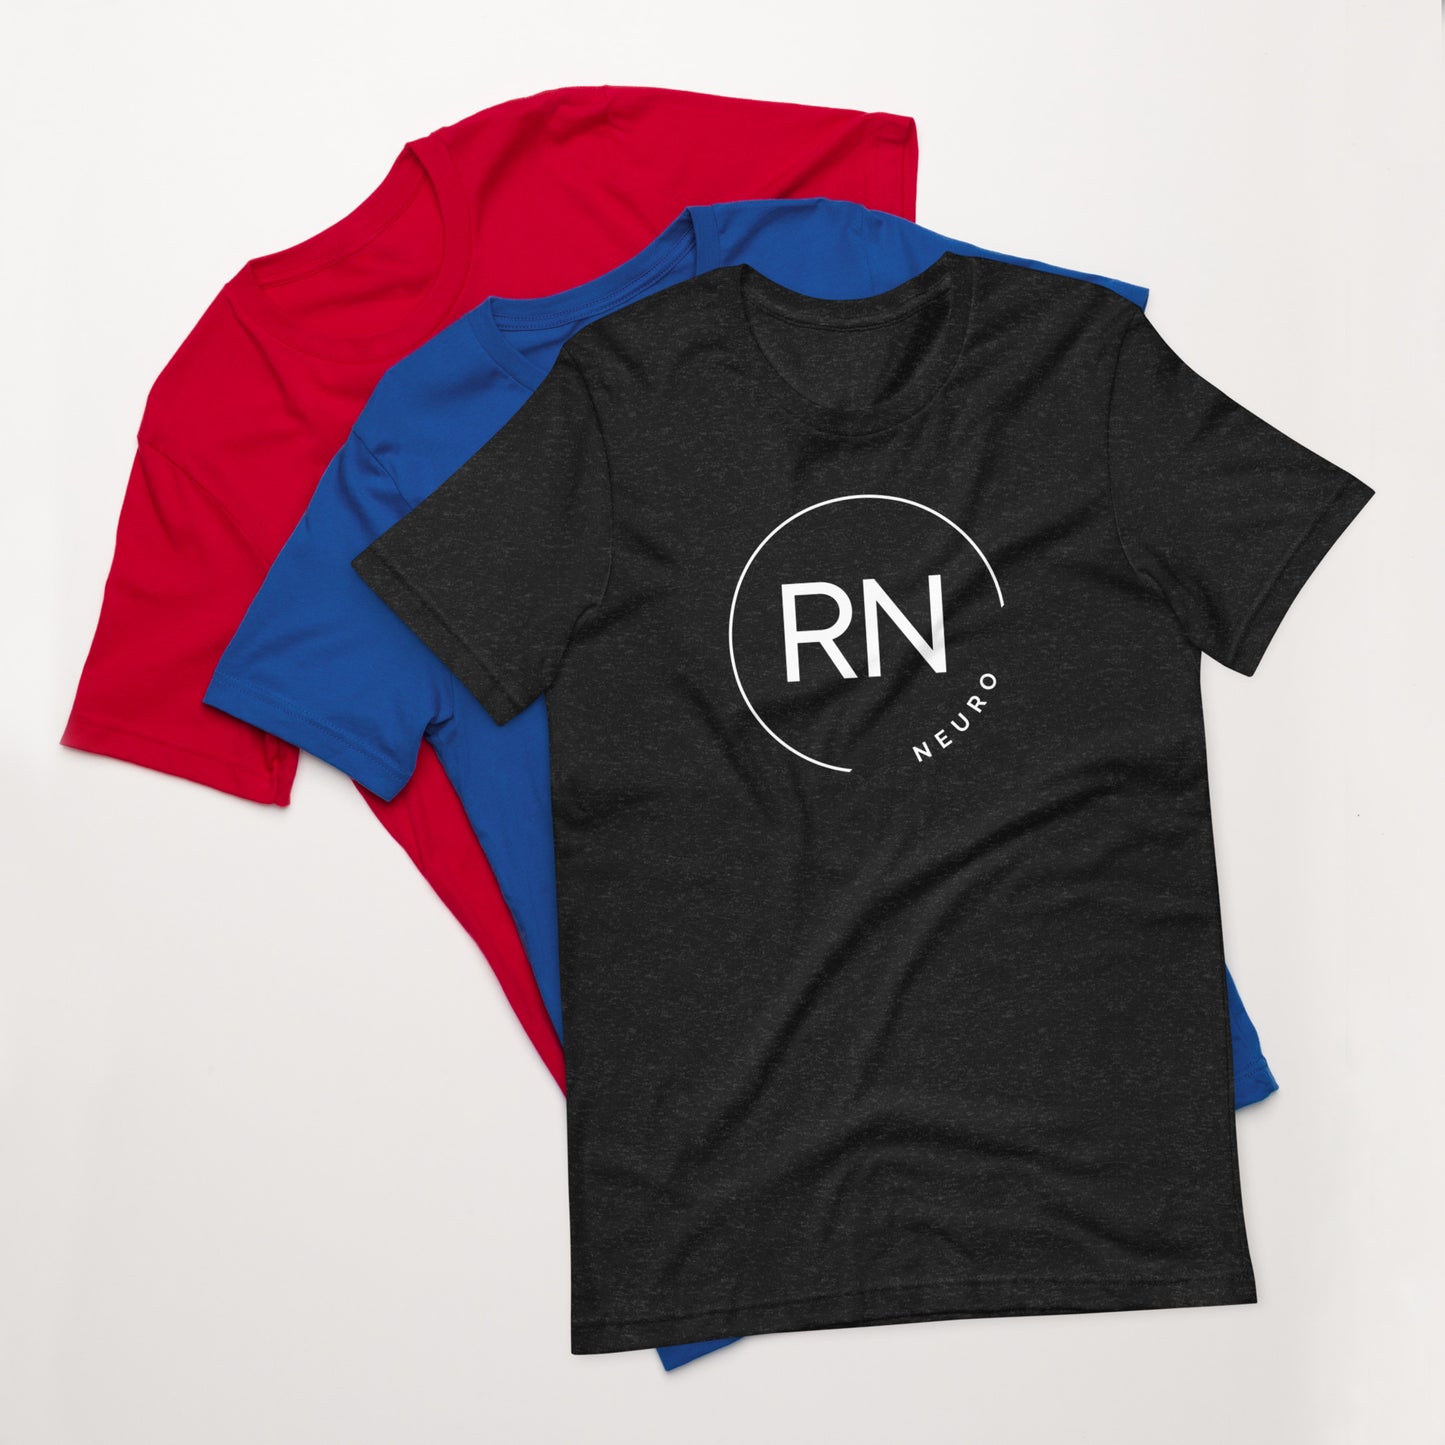 Neuro RN Circle t-shirt